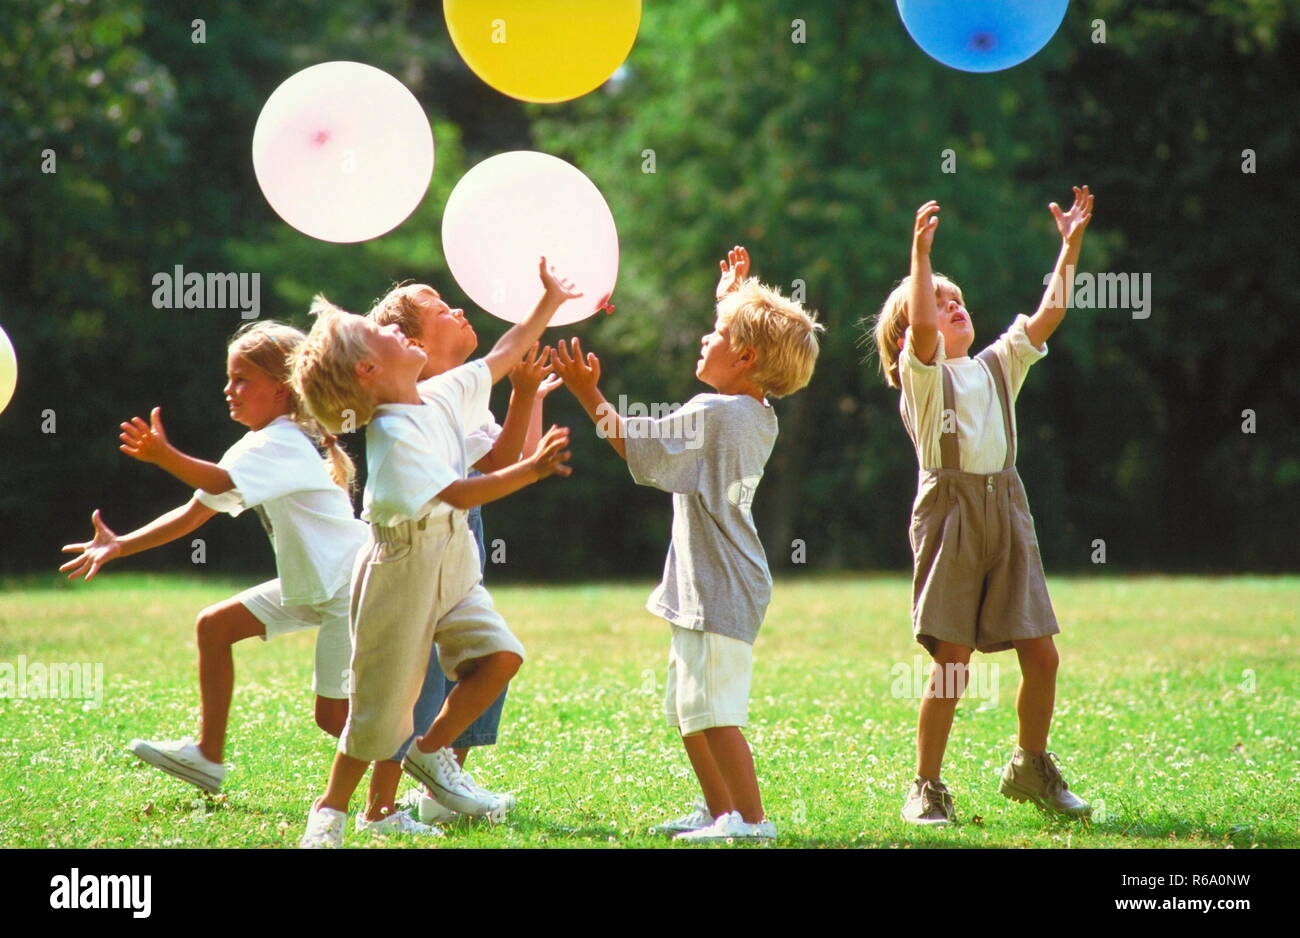 5 Kinder spielen auf einer mit Gaensebluemchen uebersaeaten Wiese im Park mit bunten Luftballons Stock Photo